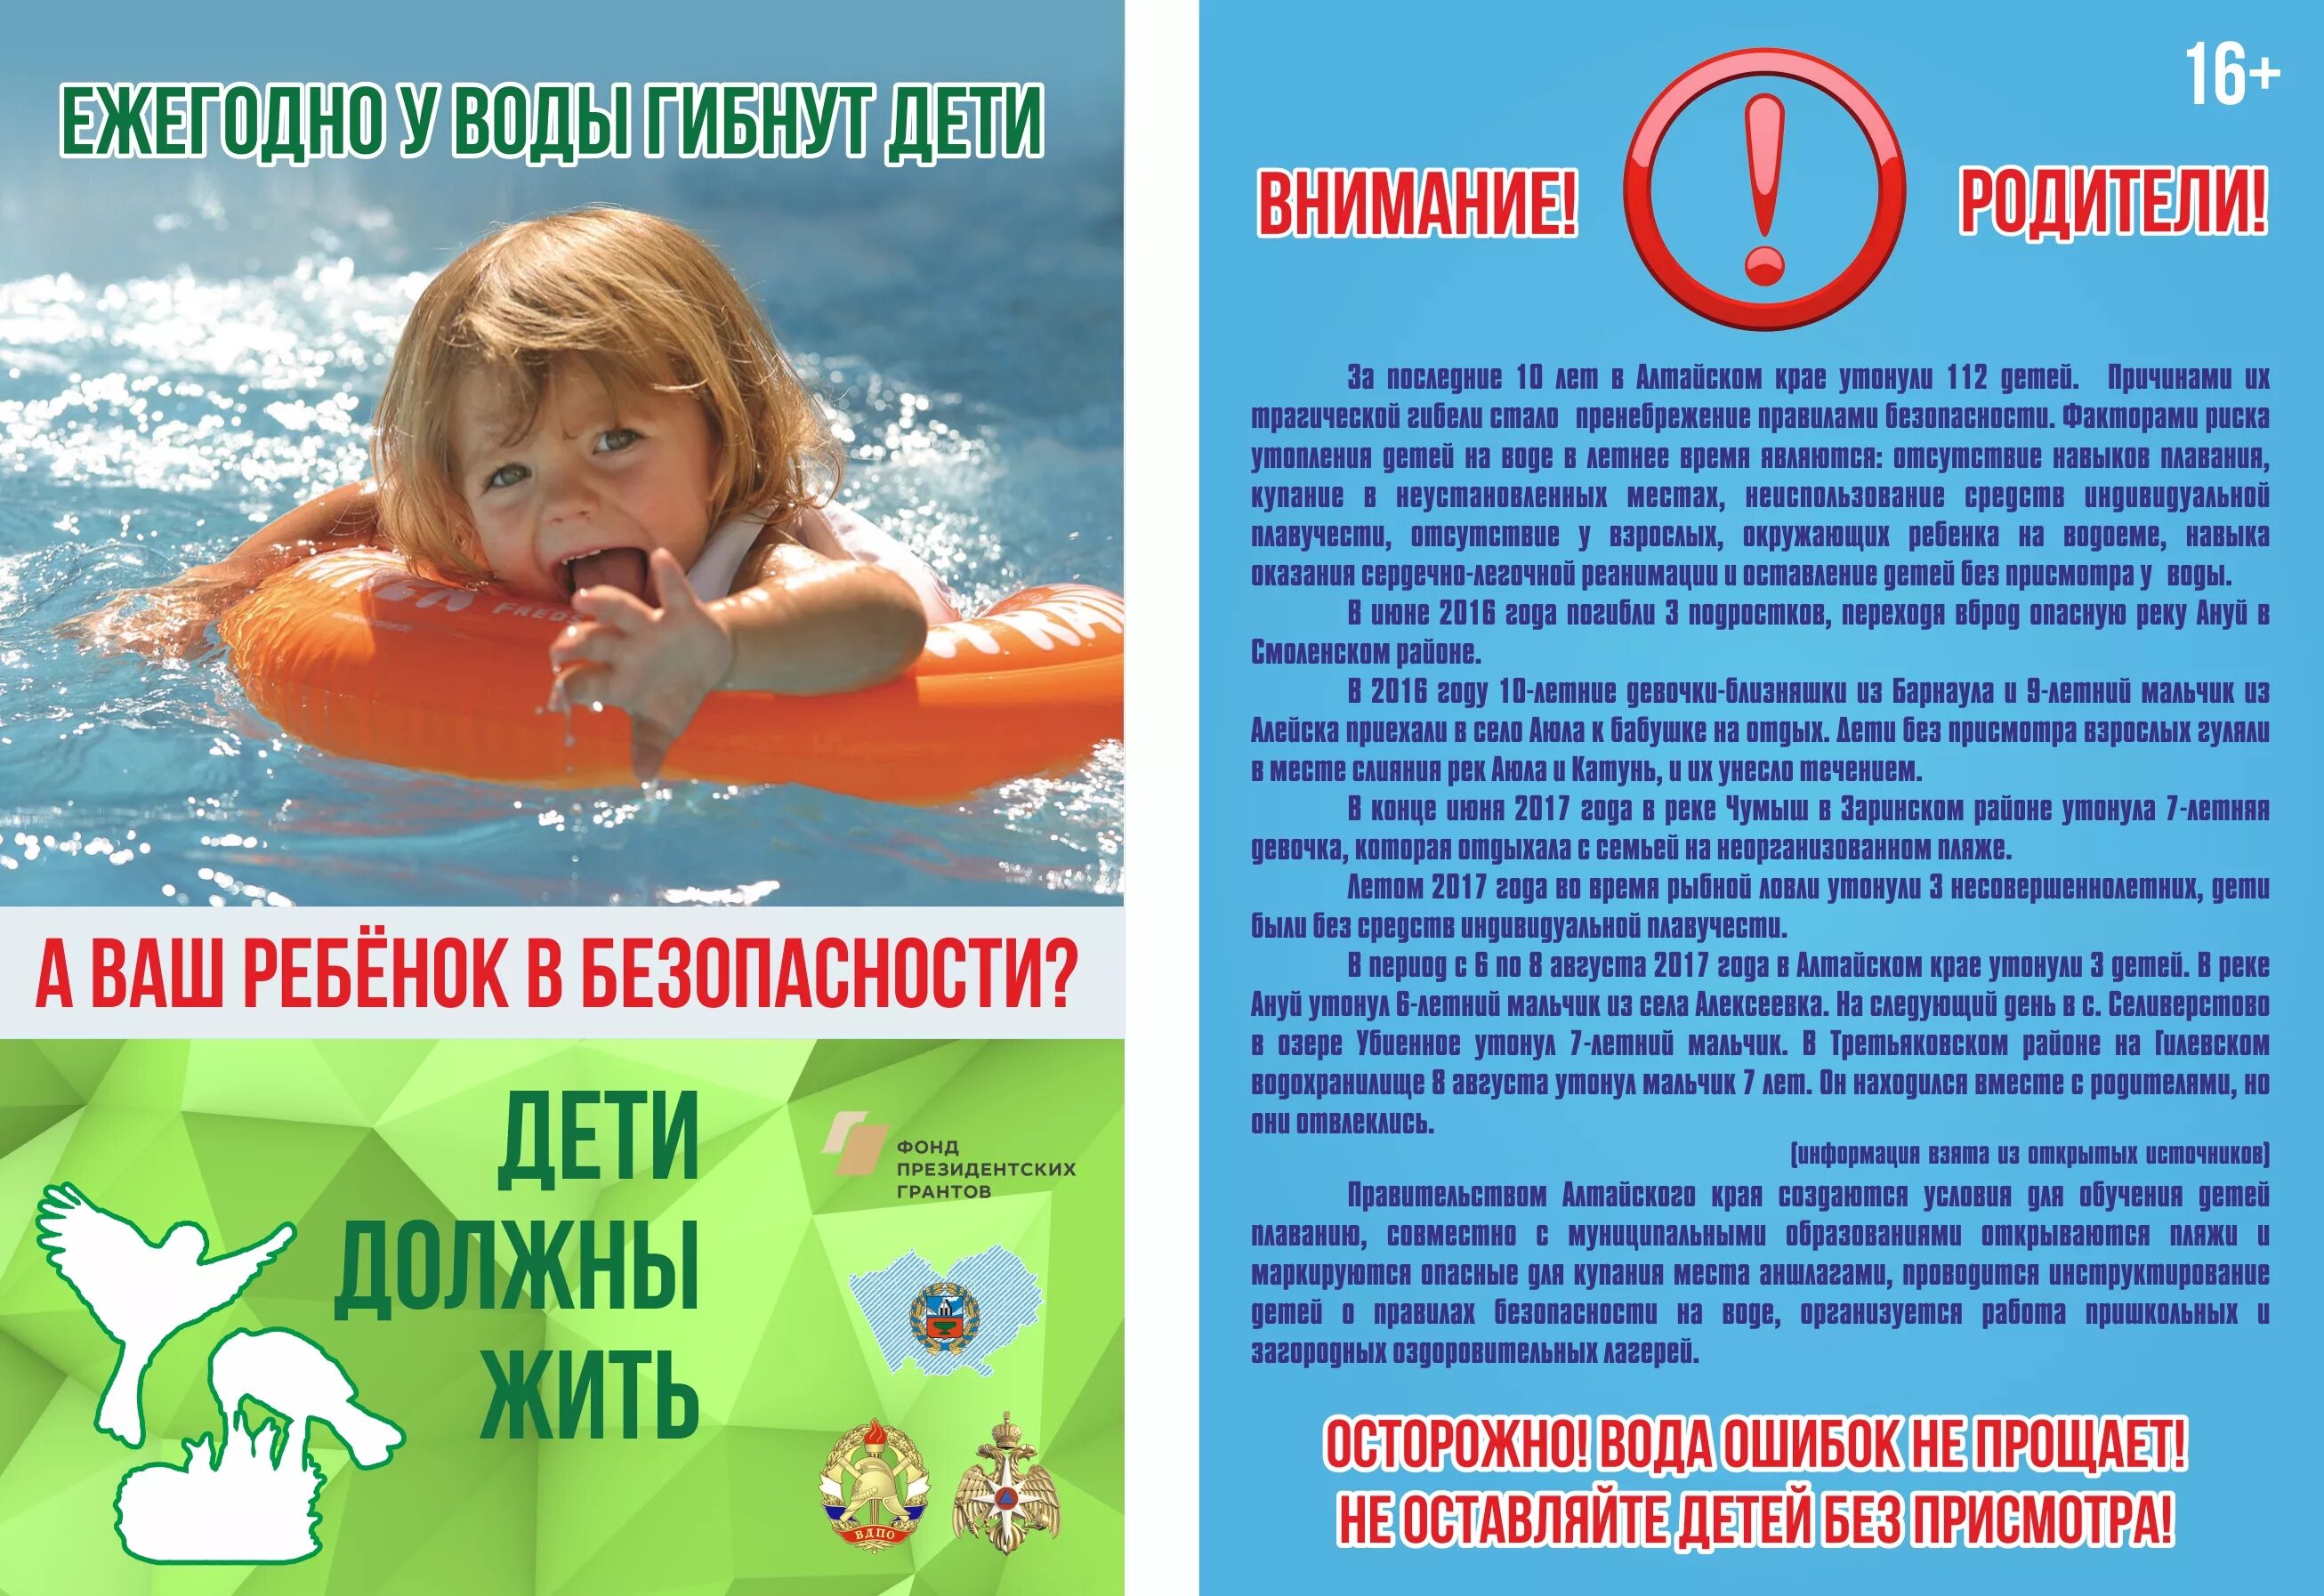 Безопасность отдыха детей в летний период. Безопасность на водоемах летом для детей. Безопасность на вордоемахдля детей. Безопасность на воде для детей. Безопасность детей на водоемах в летний период.